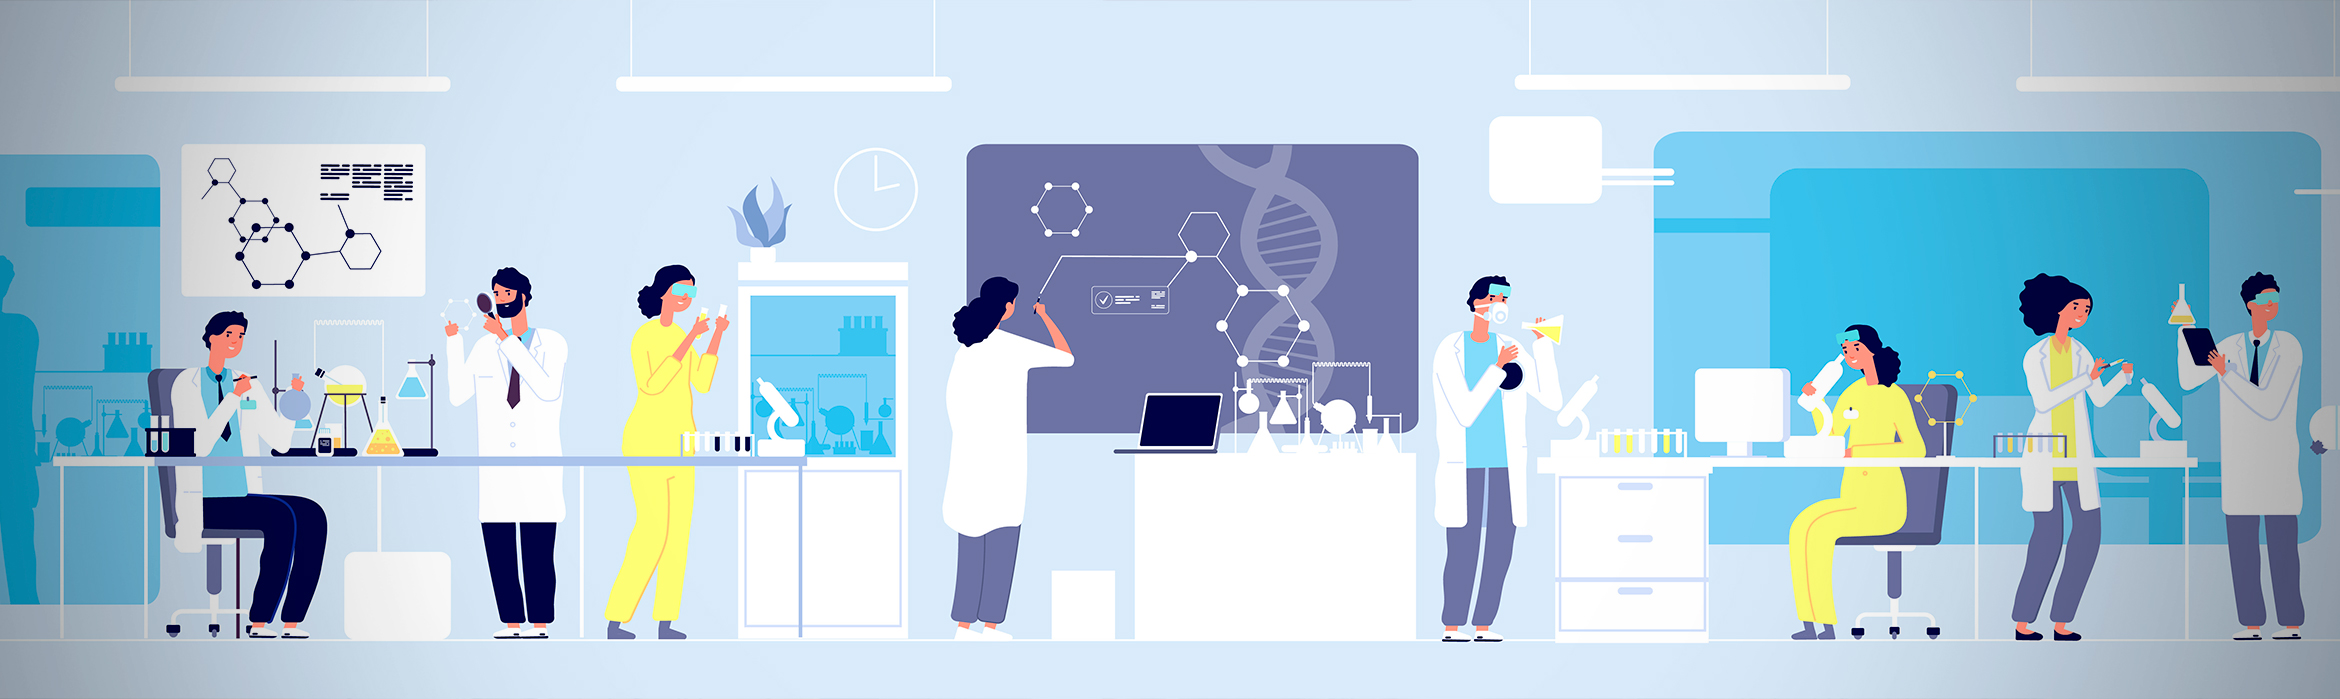 Ilustración de investigadores químicos científicos profesionales que trabajan con un equipo de laboratorio